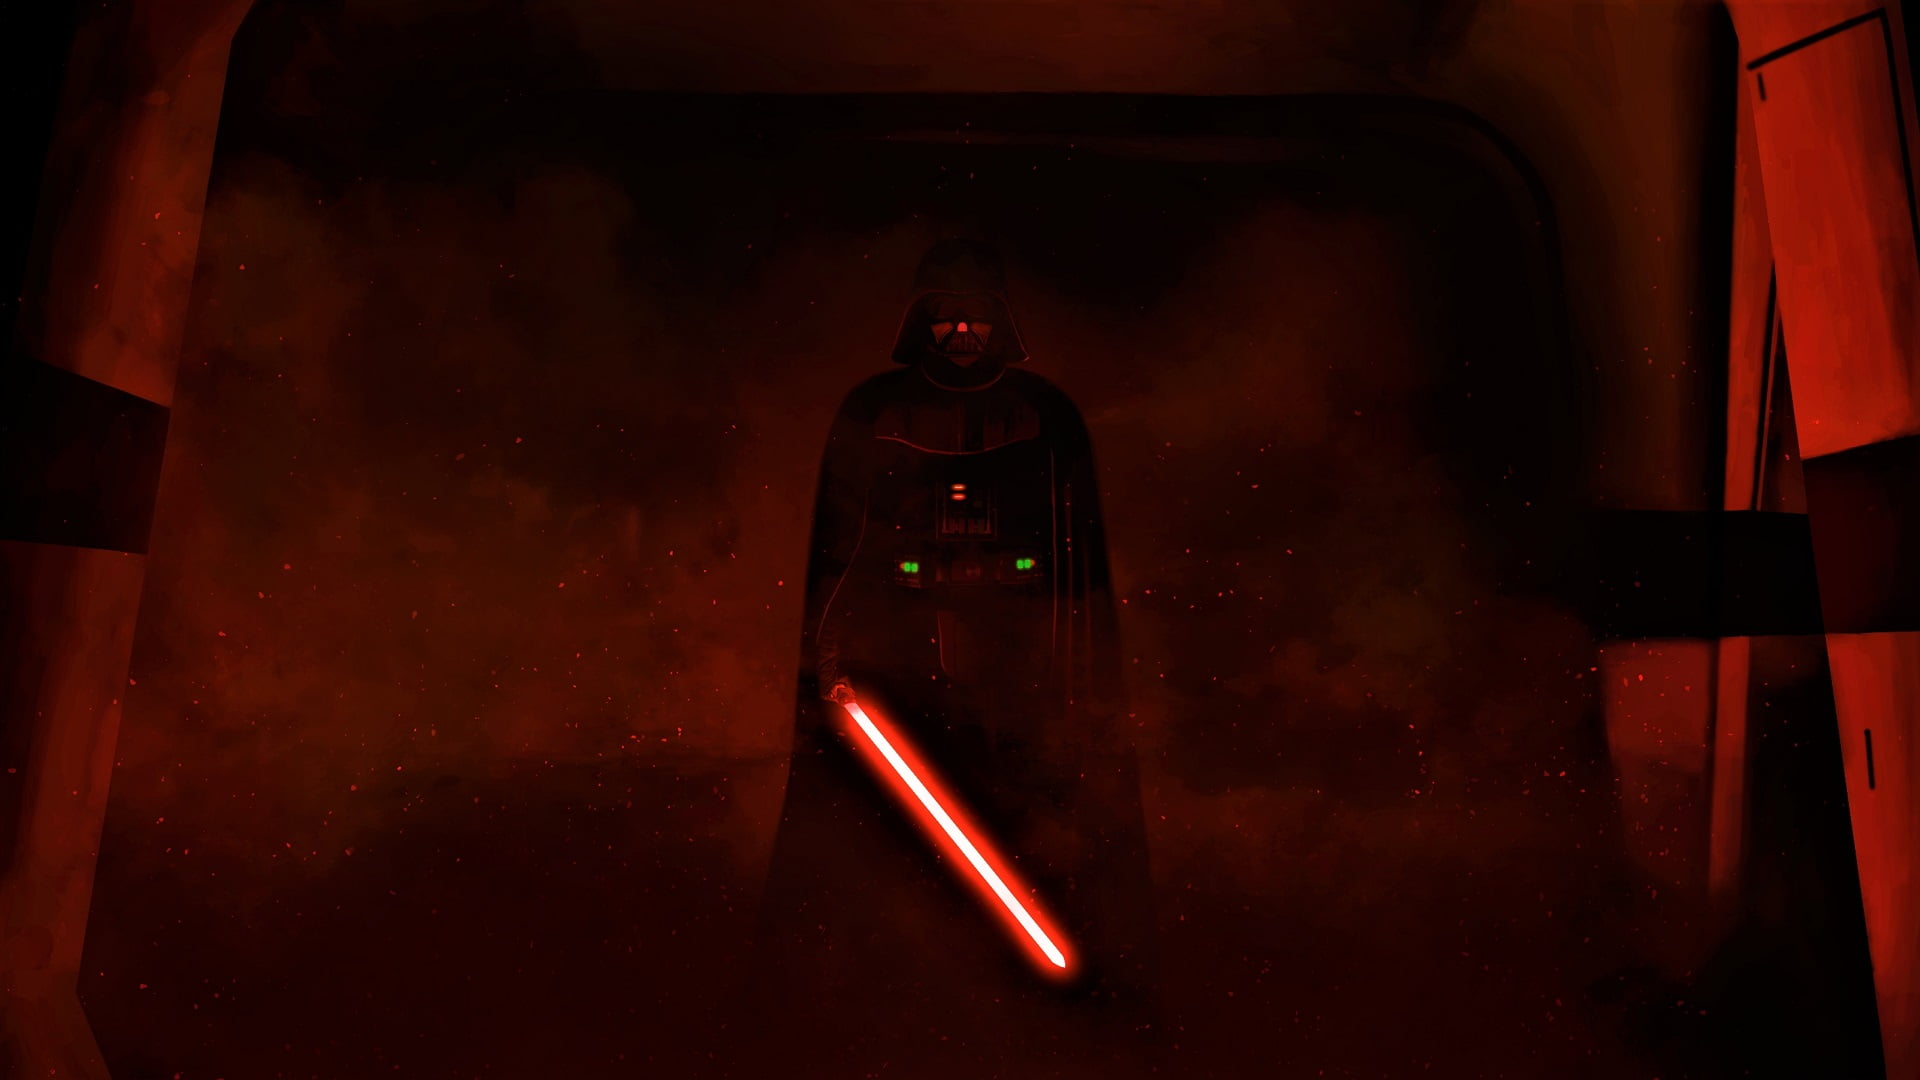 Star Wars Kylo Ren wallpaper, Darth Vader, artwork, lightsaber